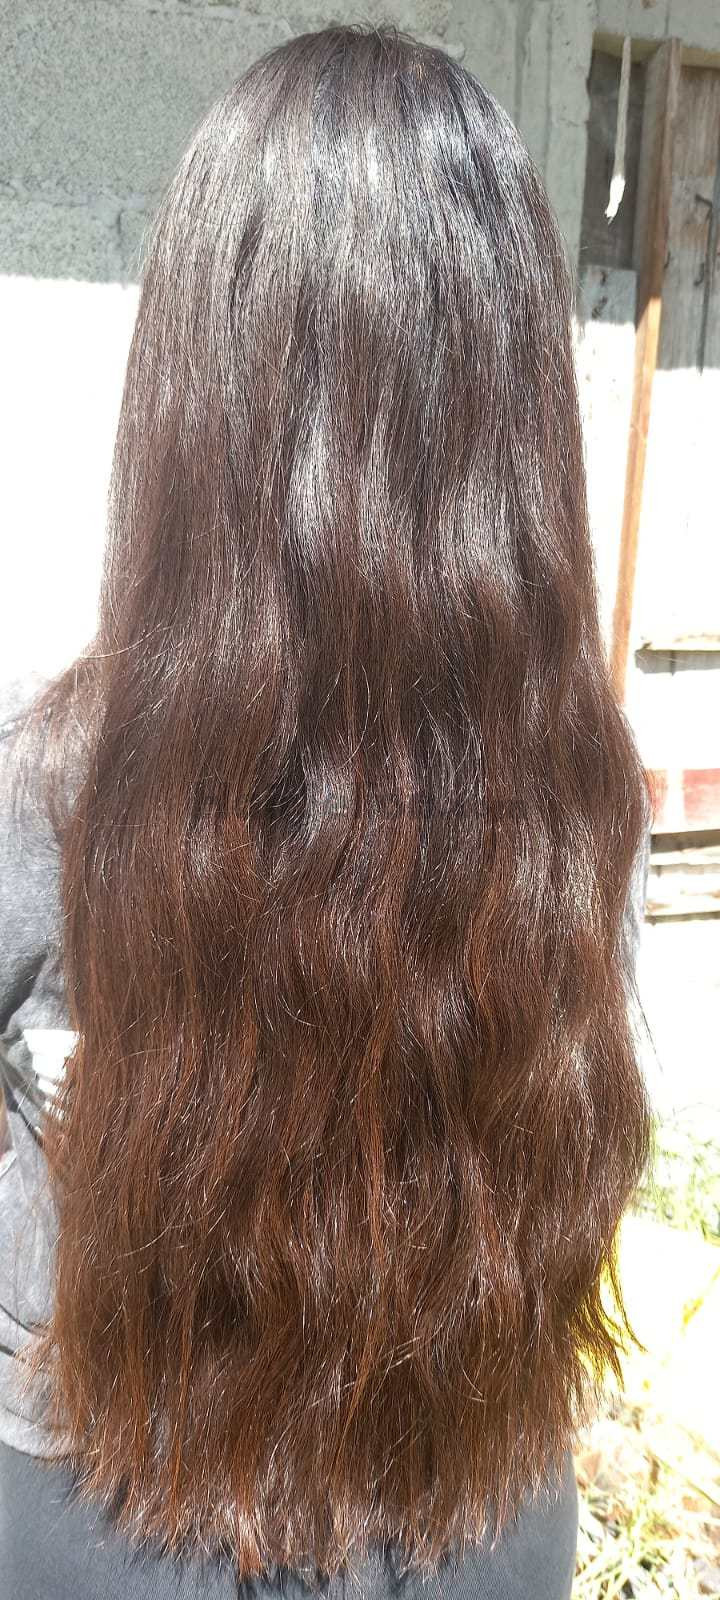 cabello4